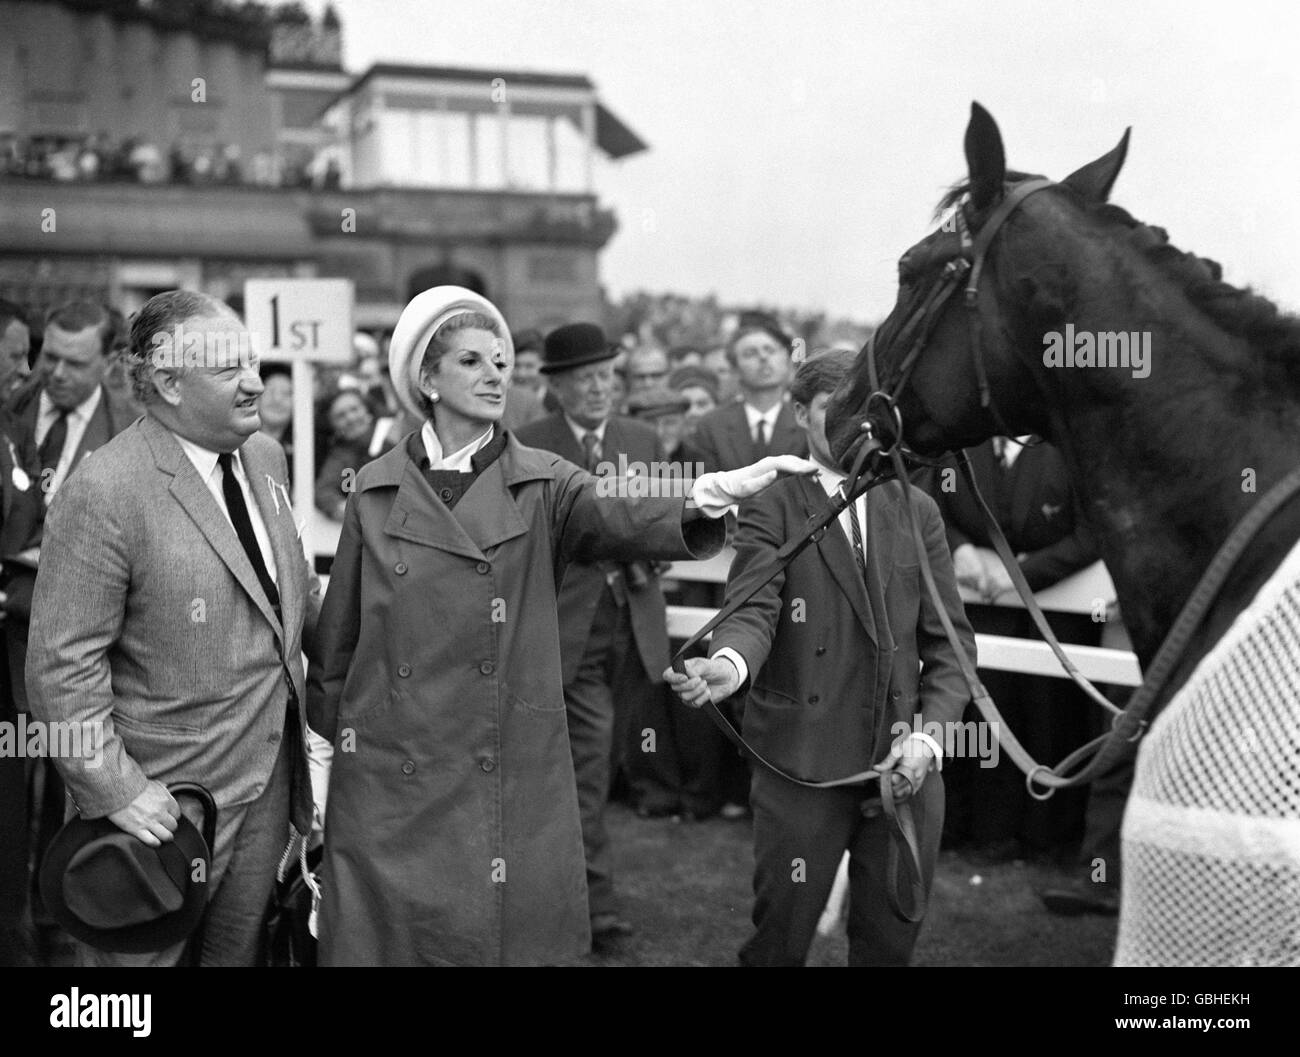 Pferderennen - St. Leger Stakes - Doncaster Racecourse. Der Besitzer von 'Indiana', Charles W. Engelhard, und seine Frau Jane, in der abgesattelte Gehege, nachdem sie den St. Leger gewonnen hatten. Stockfoto